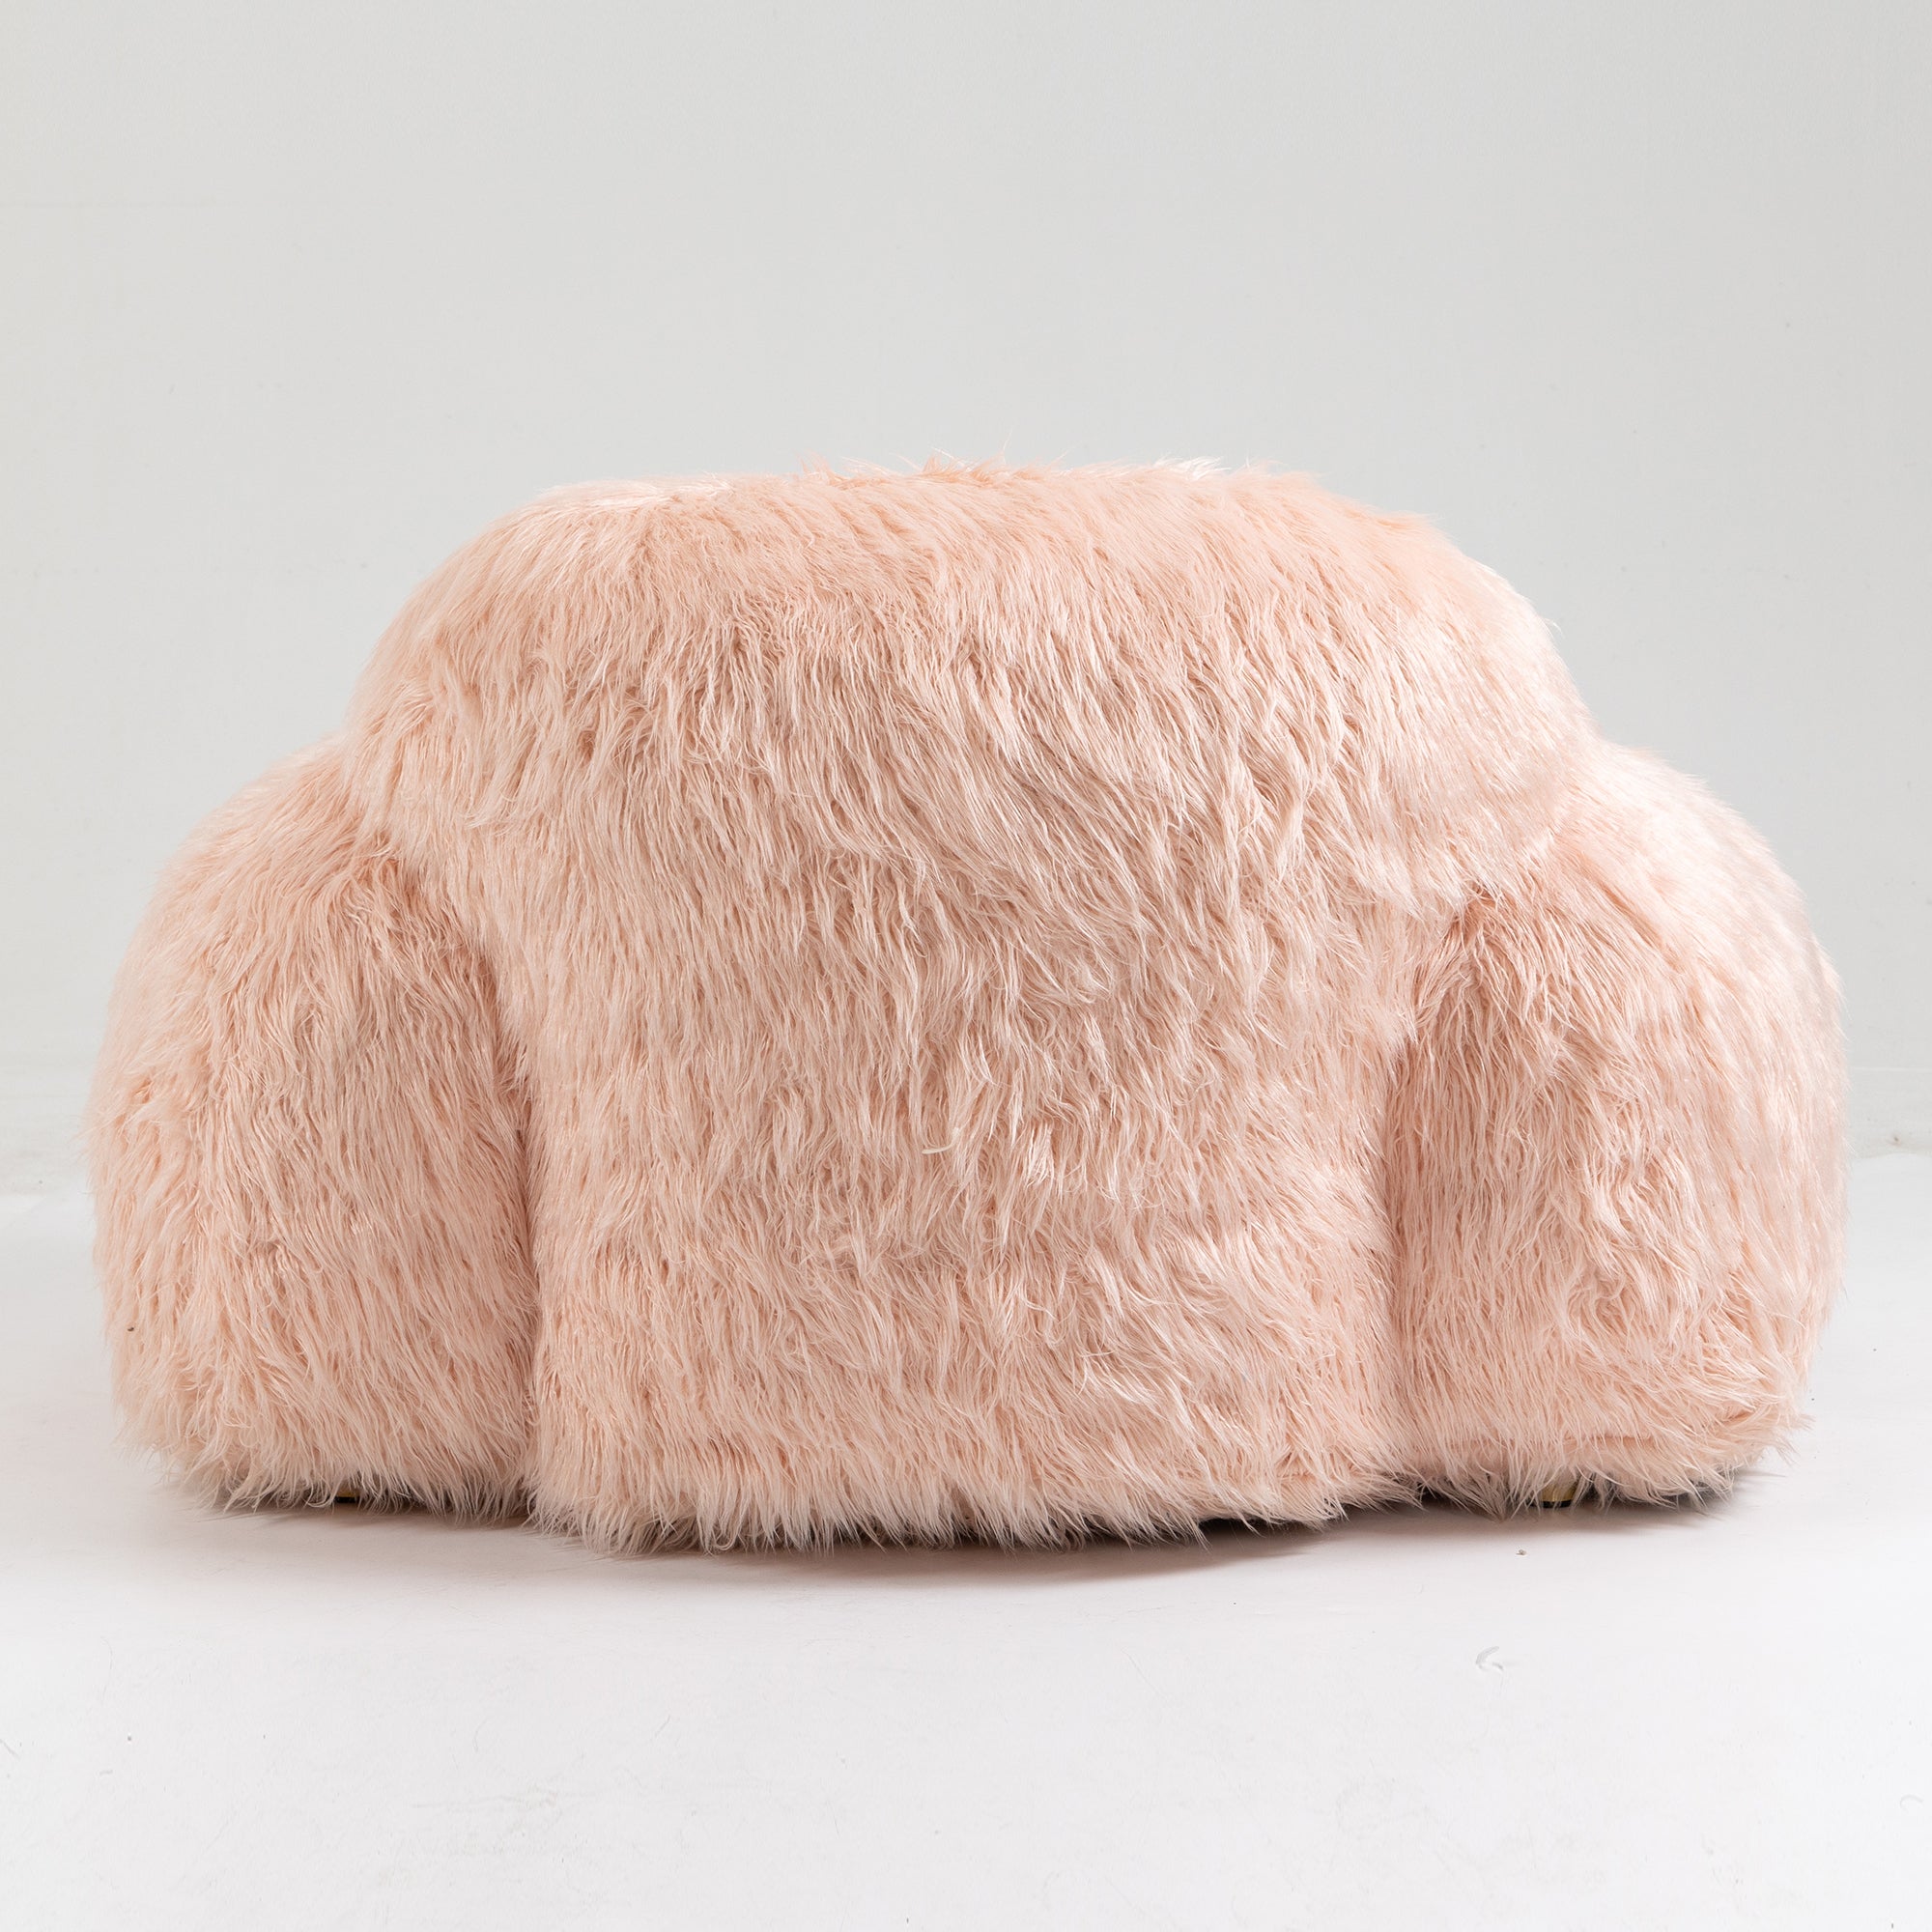 Bean bag chair lazy long hair sofa bean bag chair pink-faux fur